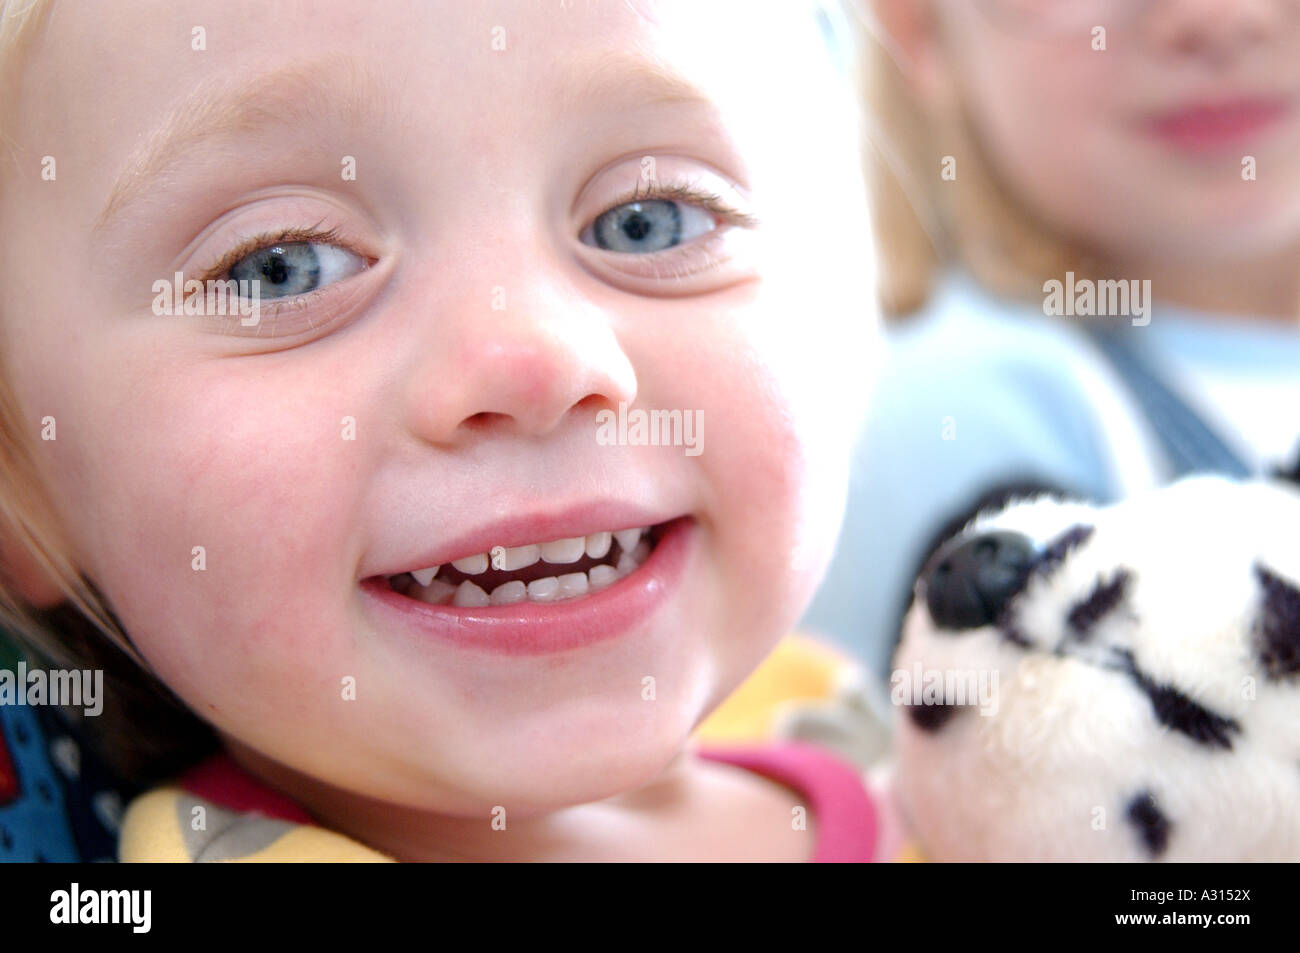 Image libre de photographie de la crèche enfant jeune fille s'amusant et smiling holding a toy en UK Banque D'Images